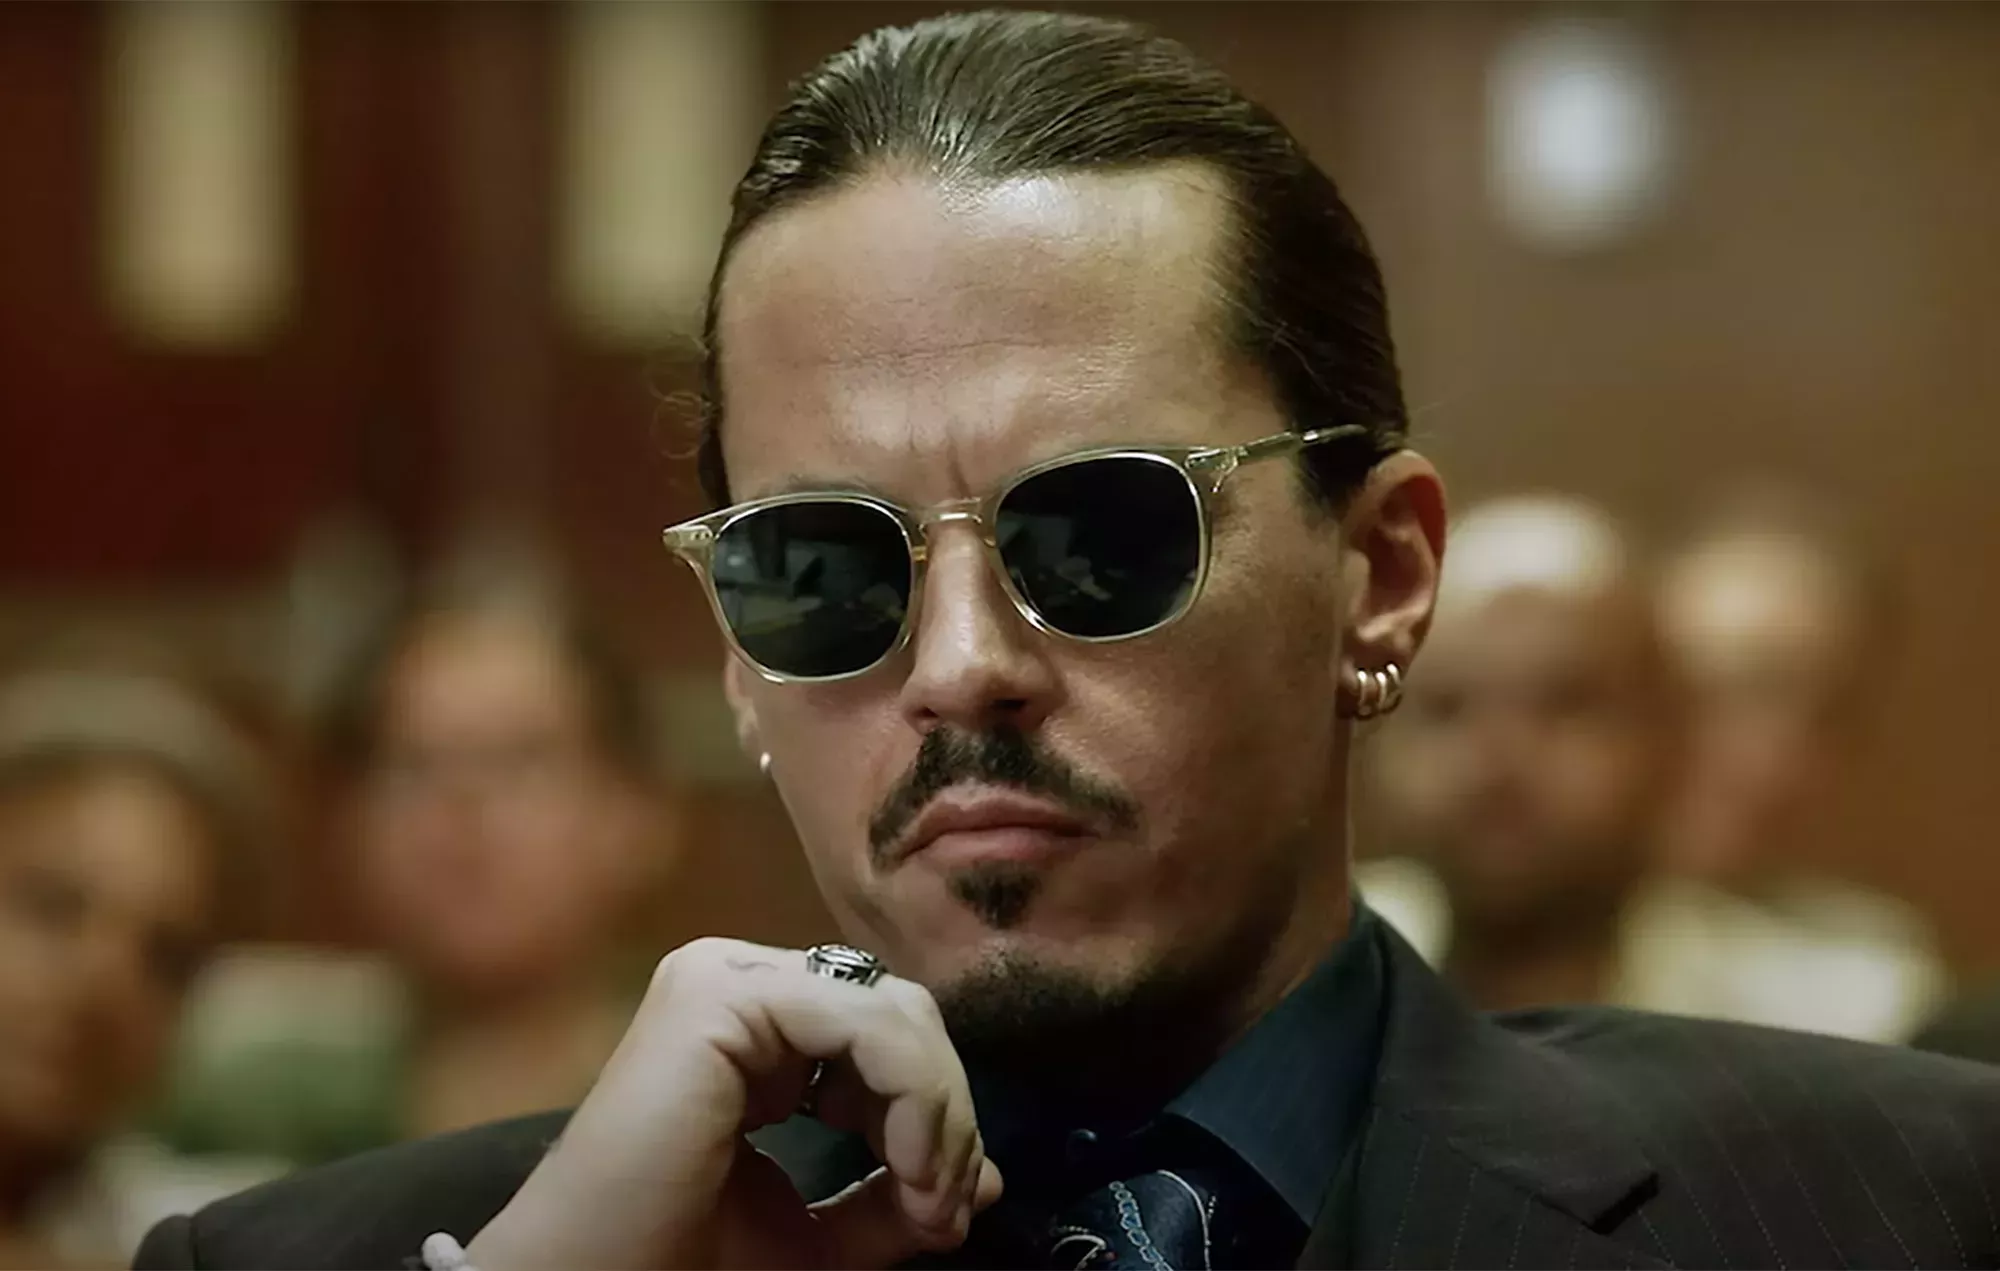 Los actores de cine Johnny Depp y Amber Heard responden a las reacciones de los supervivientes de abusos domésticos